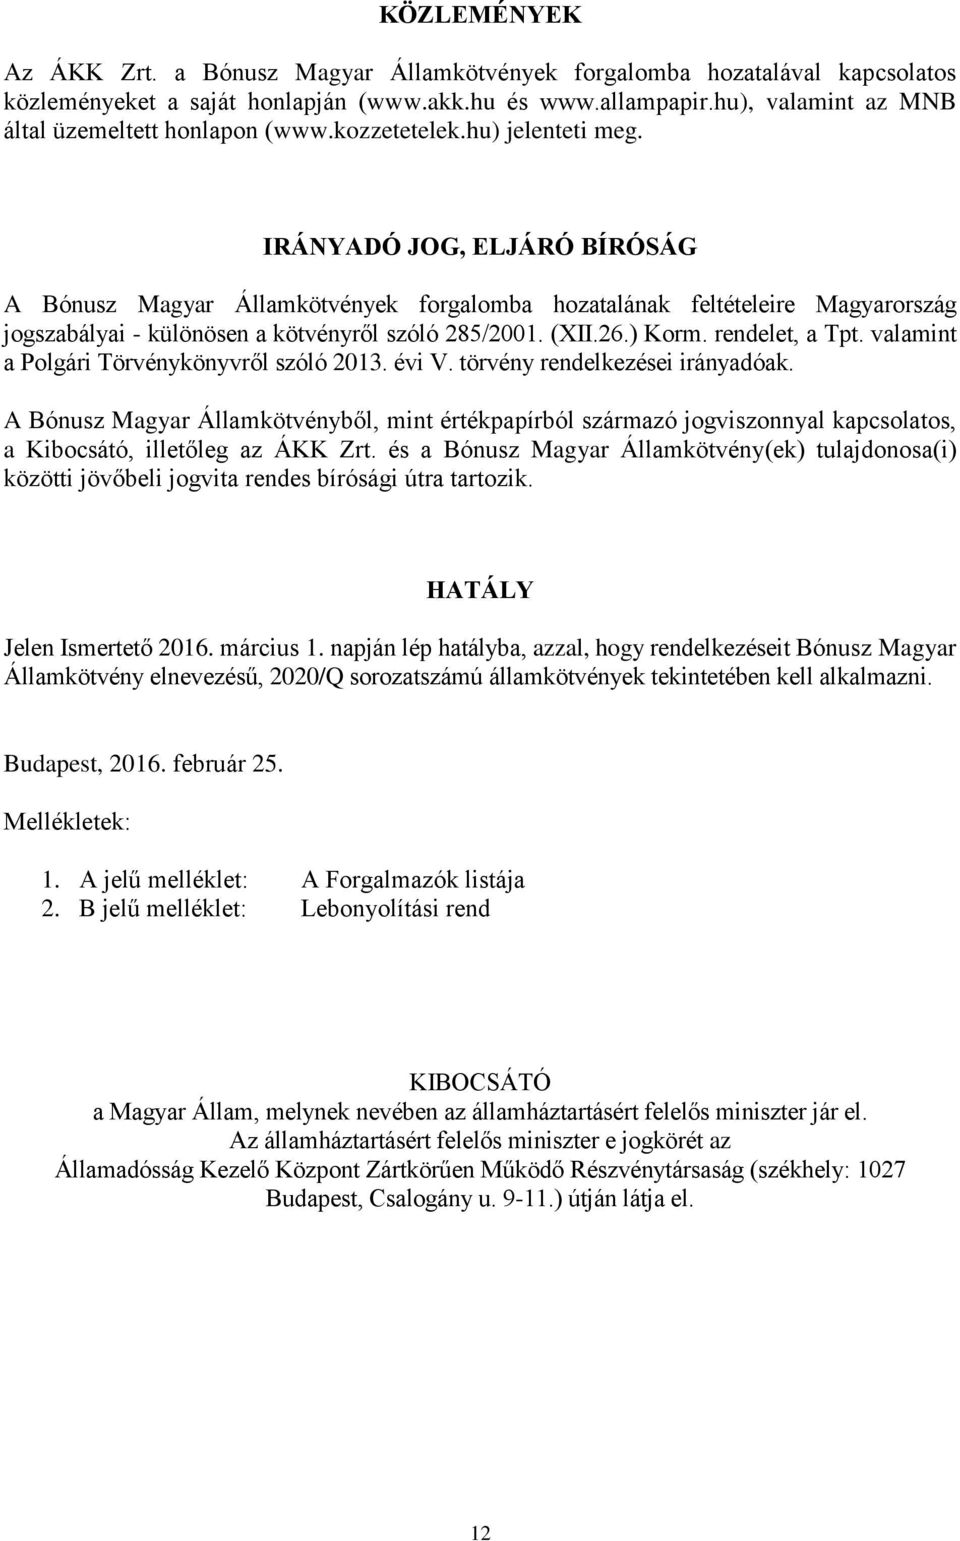 IRÁNYADÓ JOG, ELJÁRÓ BÍRÓSÁG A Bónusz Magyar Államkötvények forgalomba hozatalának feltételeire Magyarország jogszabályai - különösen a kötvényről szóló 285/2001. (XII.26.) Korm. rendelet, a Tpt.